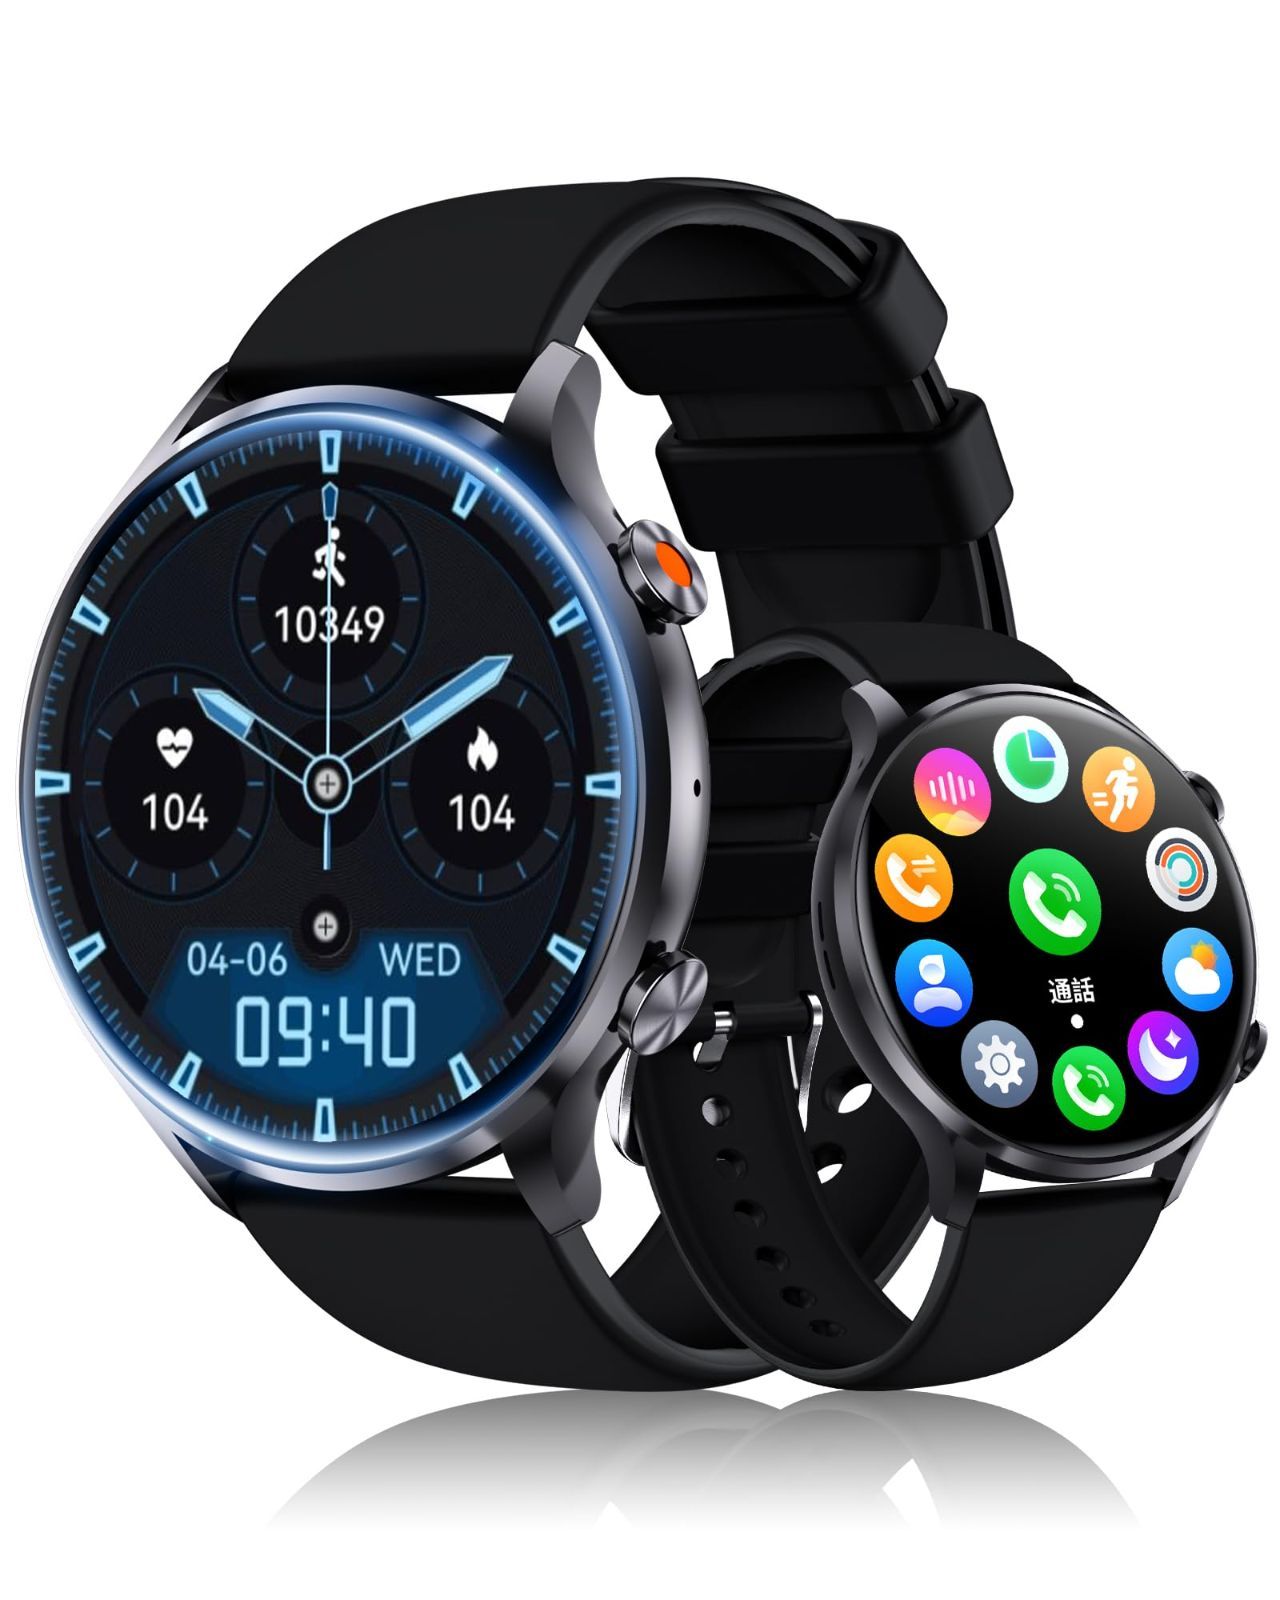 スマートウォッチ2.02インチ超大画面 通話機能付き smart watch - 3